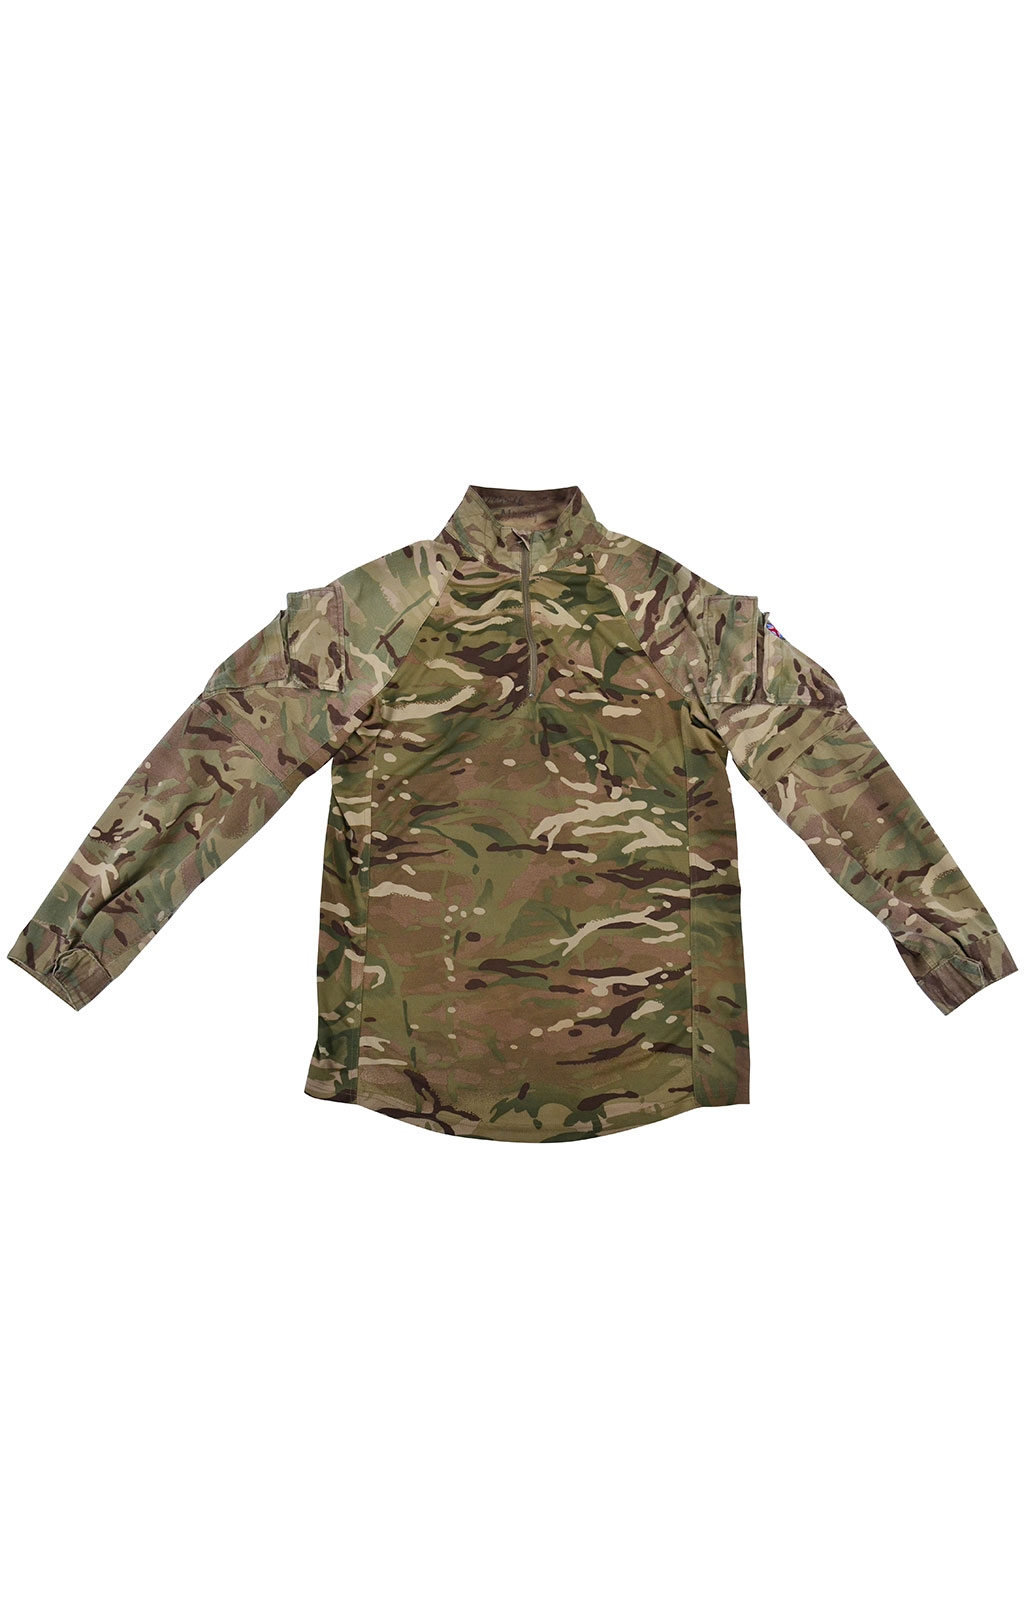 Рубашка Combat Shirt облегчённая mtp б/у Англия